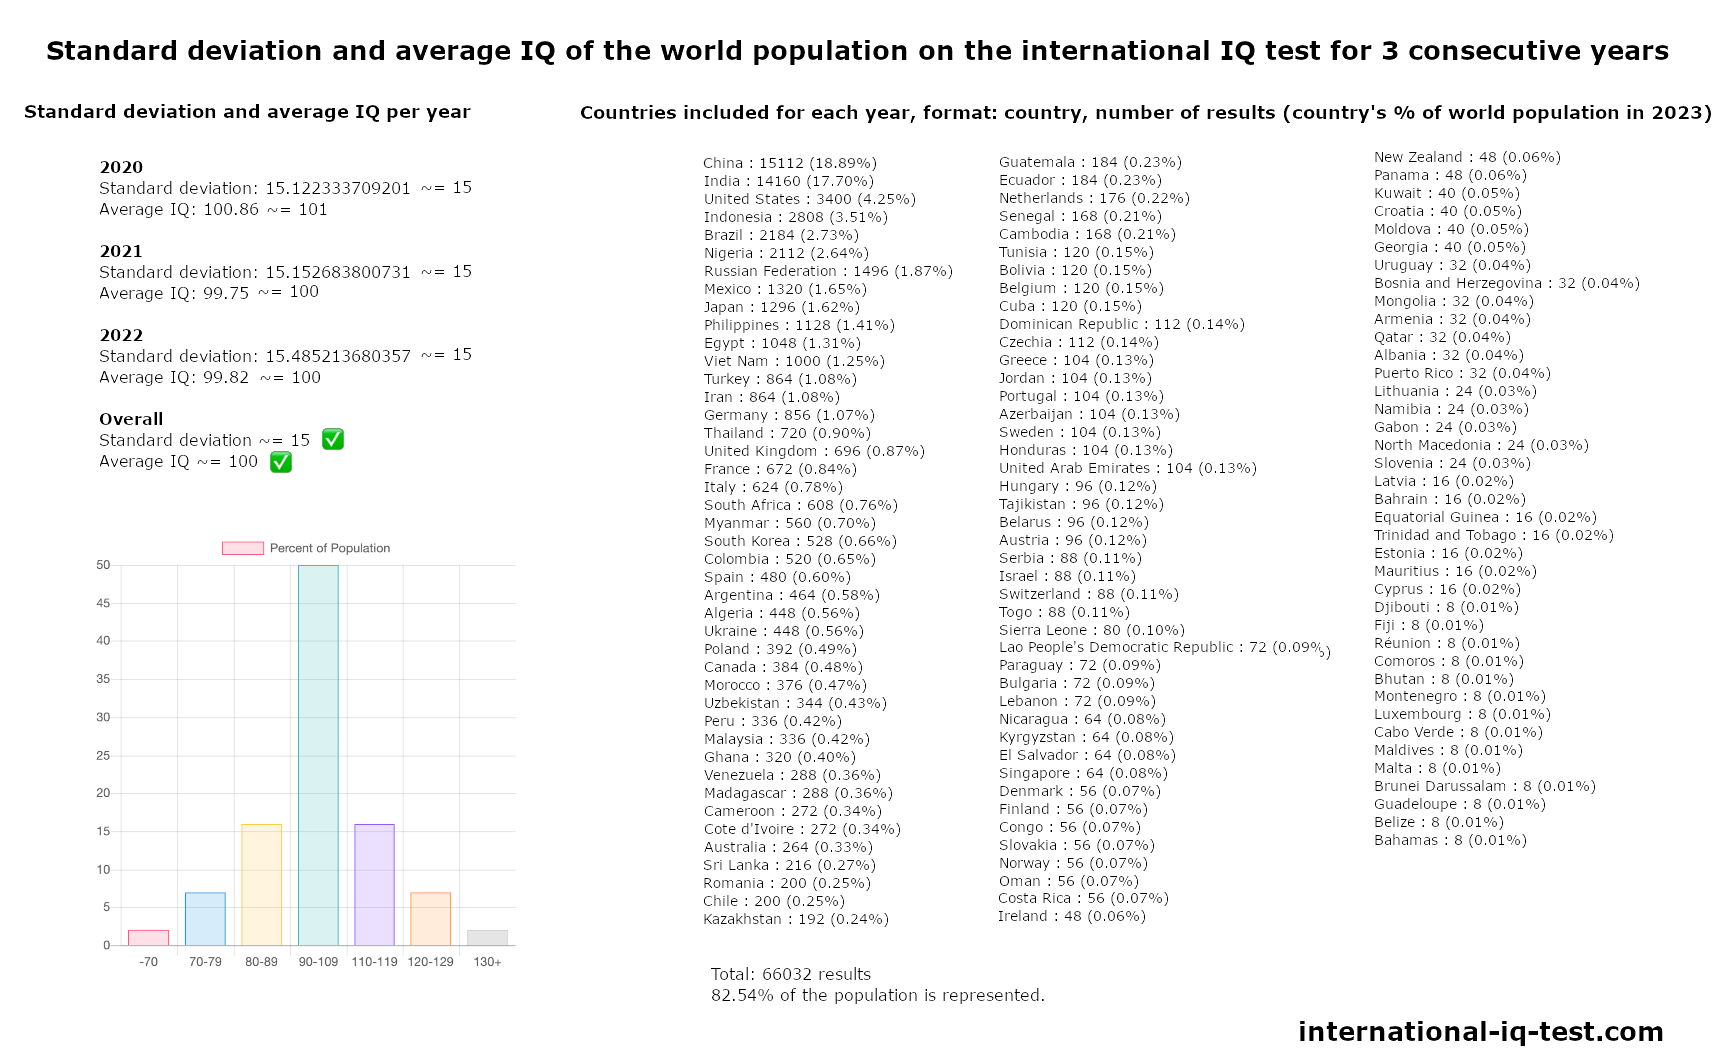 Standardni odklon in povprečni IQ svetovnega prebivalstva na mednarodnem testu IQ v letih 2020, 2021 in 2022